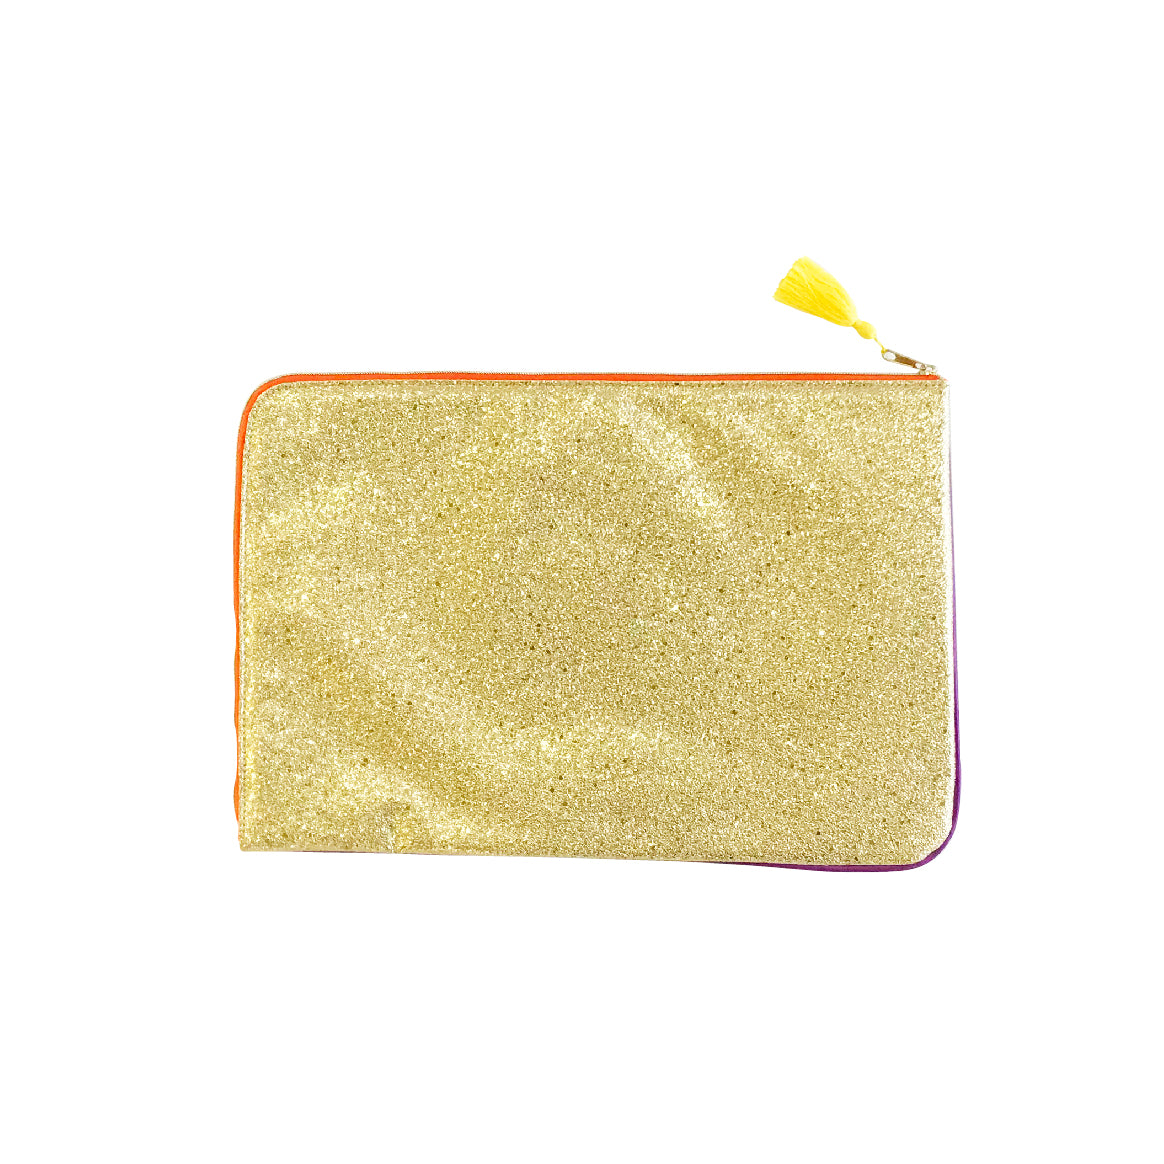 Thai gold clutch bag